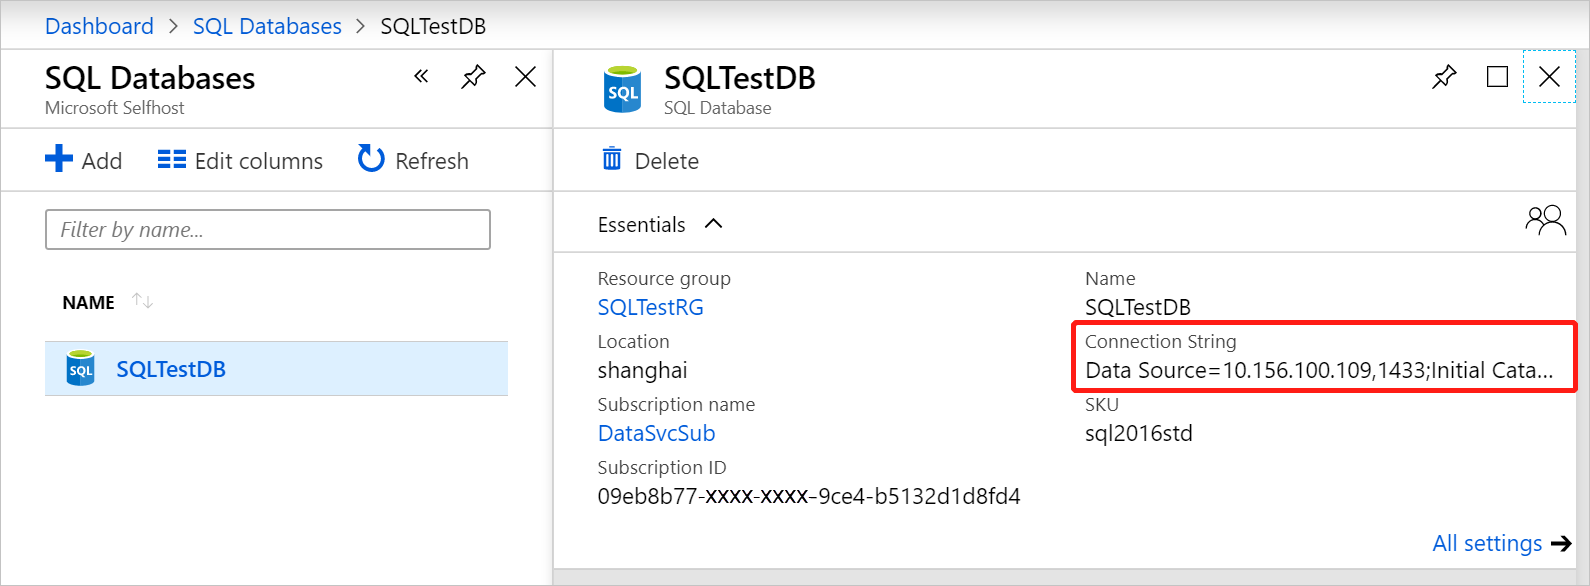 Récupérer la chaîne de connexion pour la base de données SQL Server